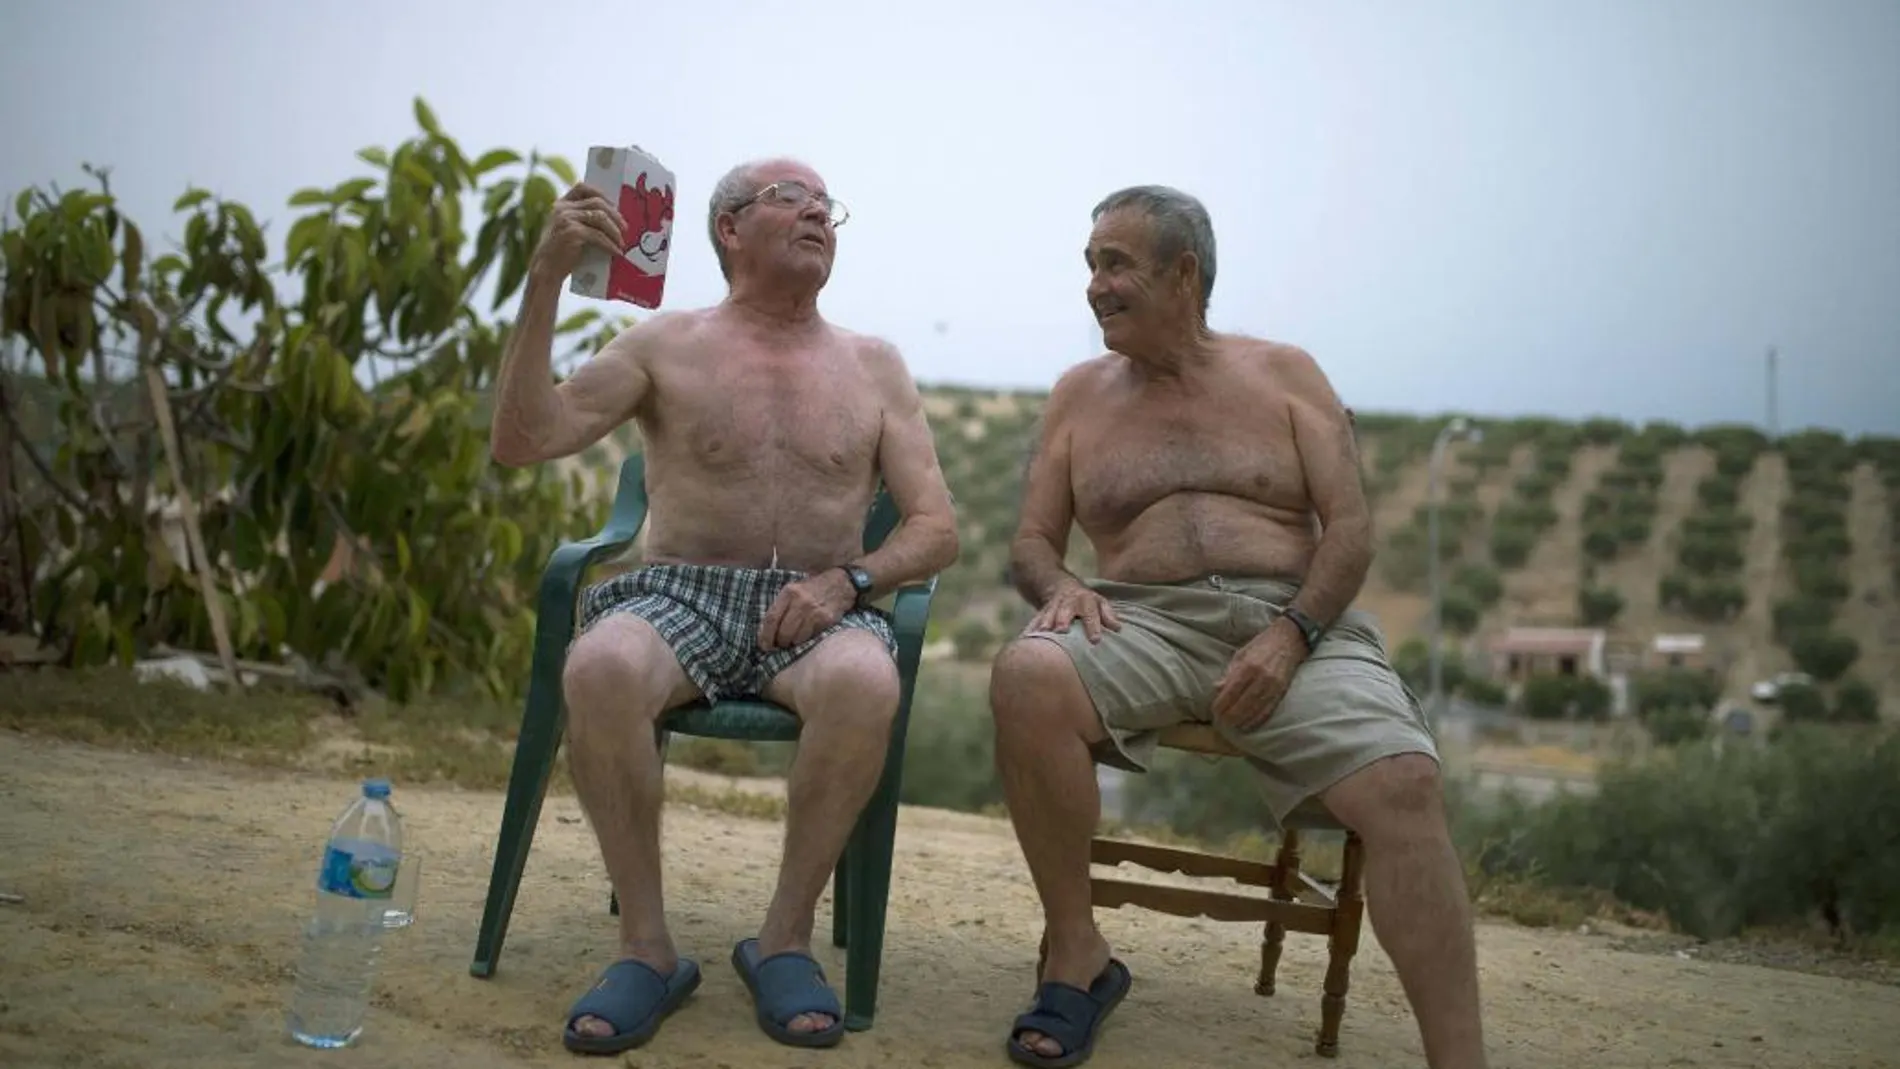 Vecinos de la localidad cordobesa de Espejo tratan de paliar la calor, en una imagen tomada estos días